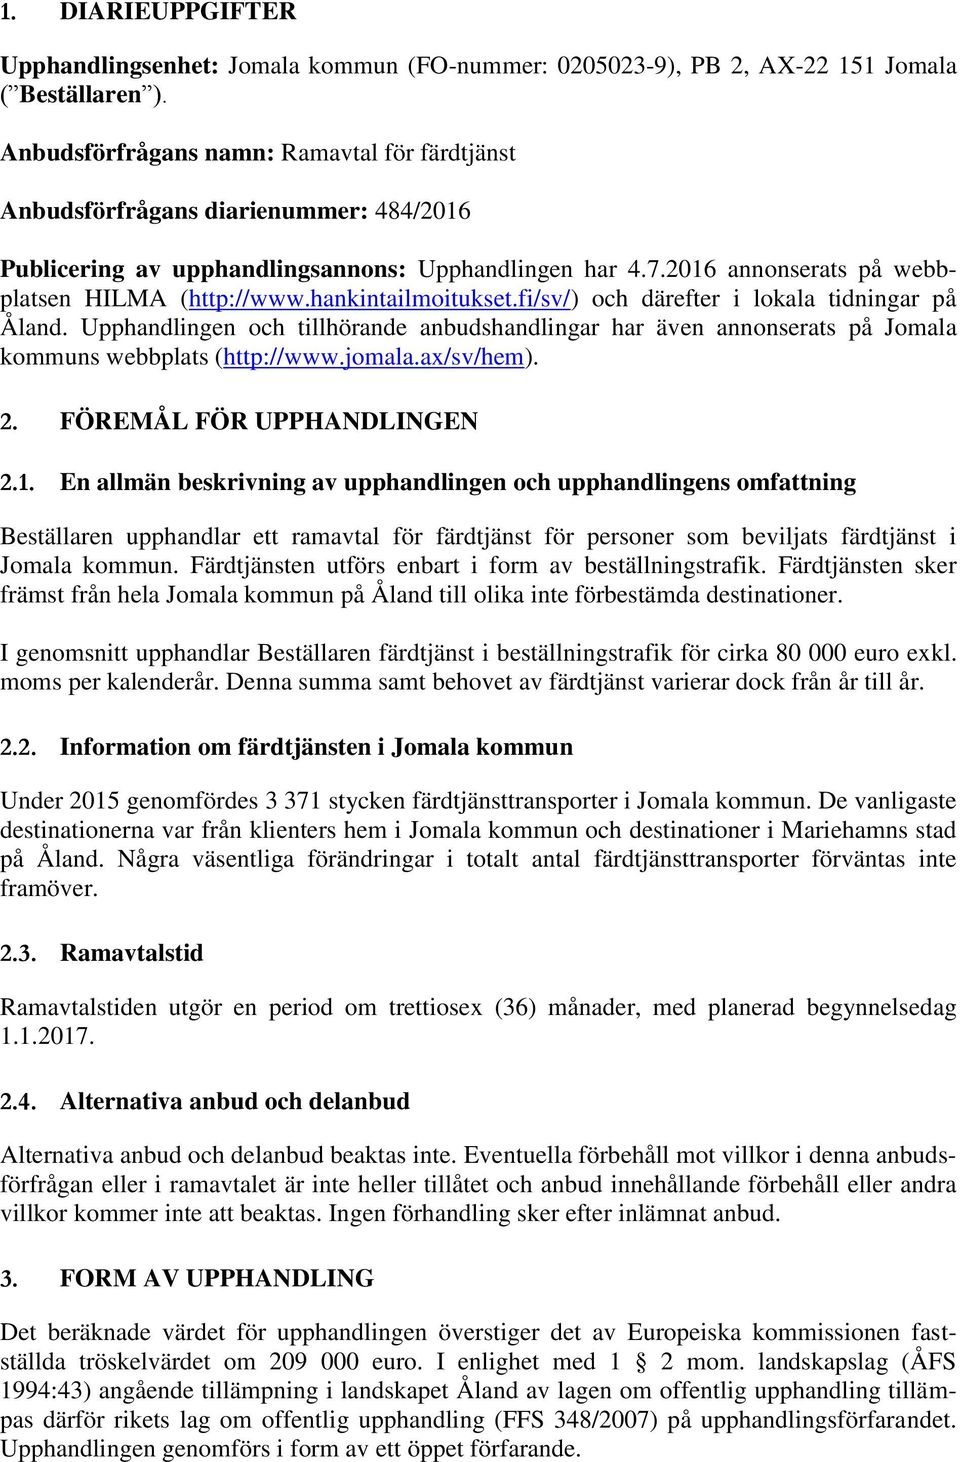 hankintailmoitukset.fi/sv/) och därefter i lokala tidningar på Åland. Upphandlingen och tillhörande anbudshandlingar har även annonserats på Jomala kommuns webbplats (http://www.jomala.ax/sv/hem). 2.